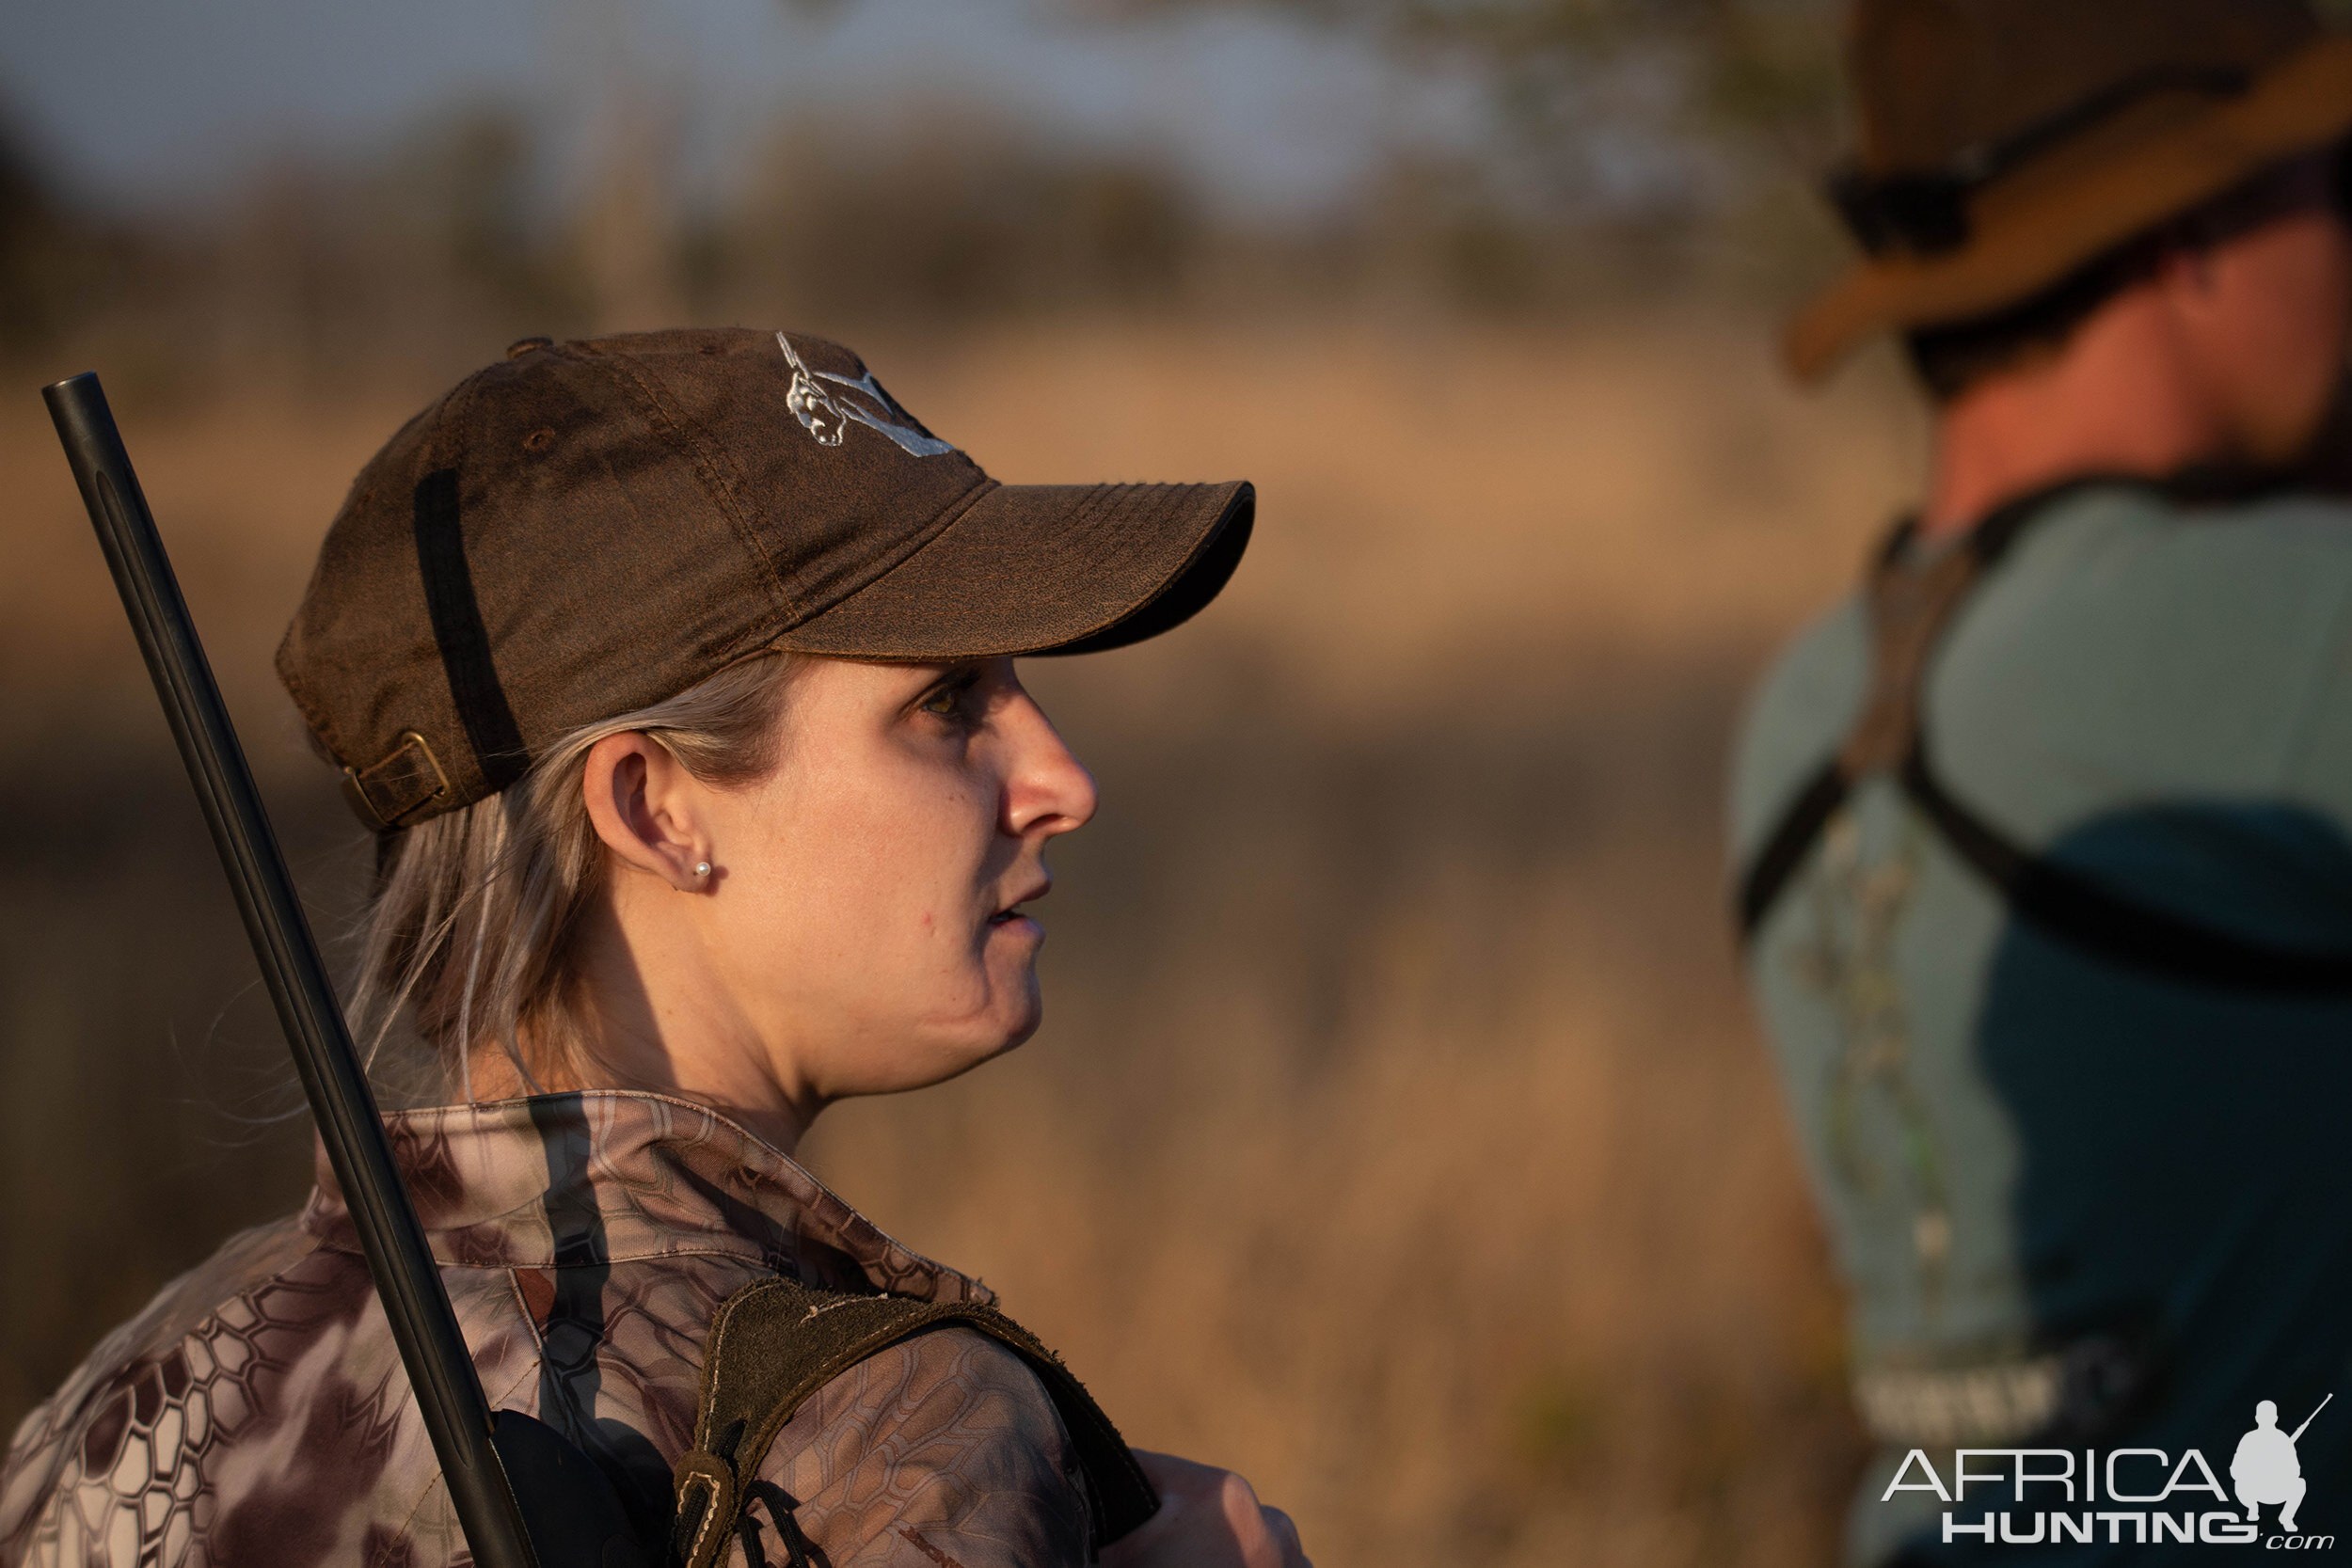 Kirstie Ennis Hunting in South Africa